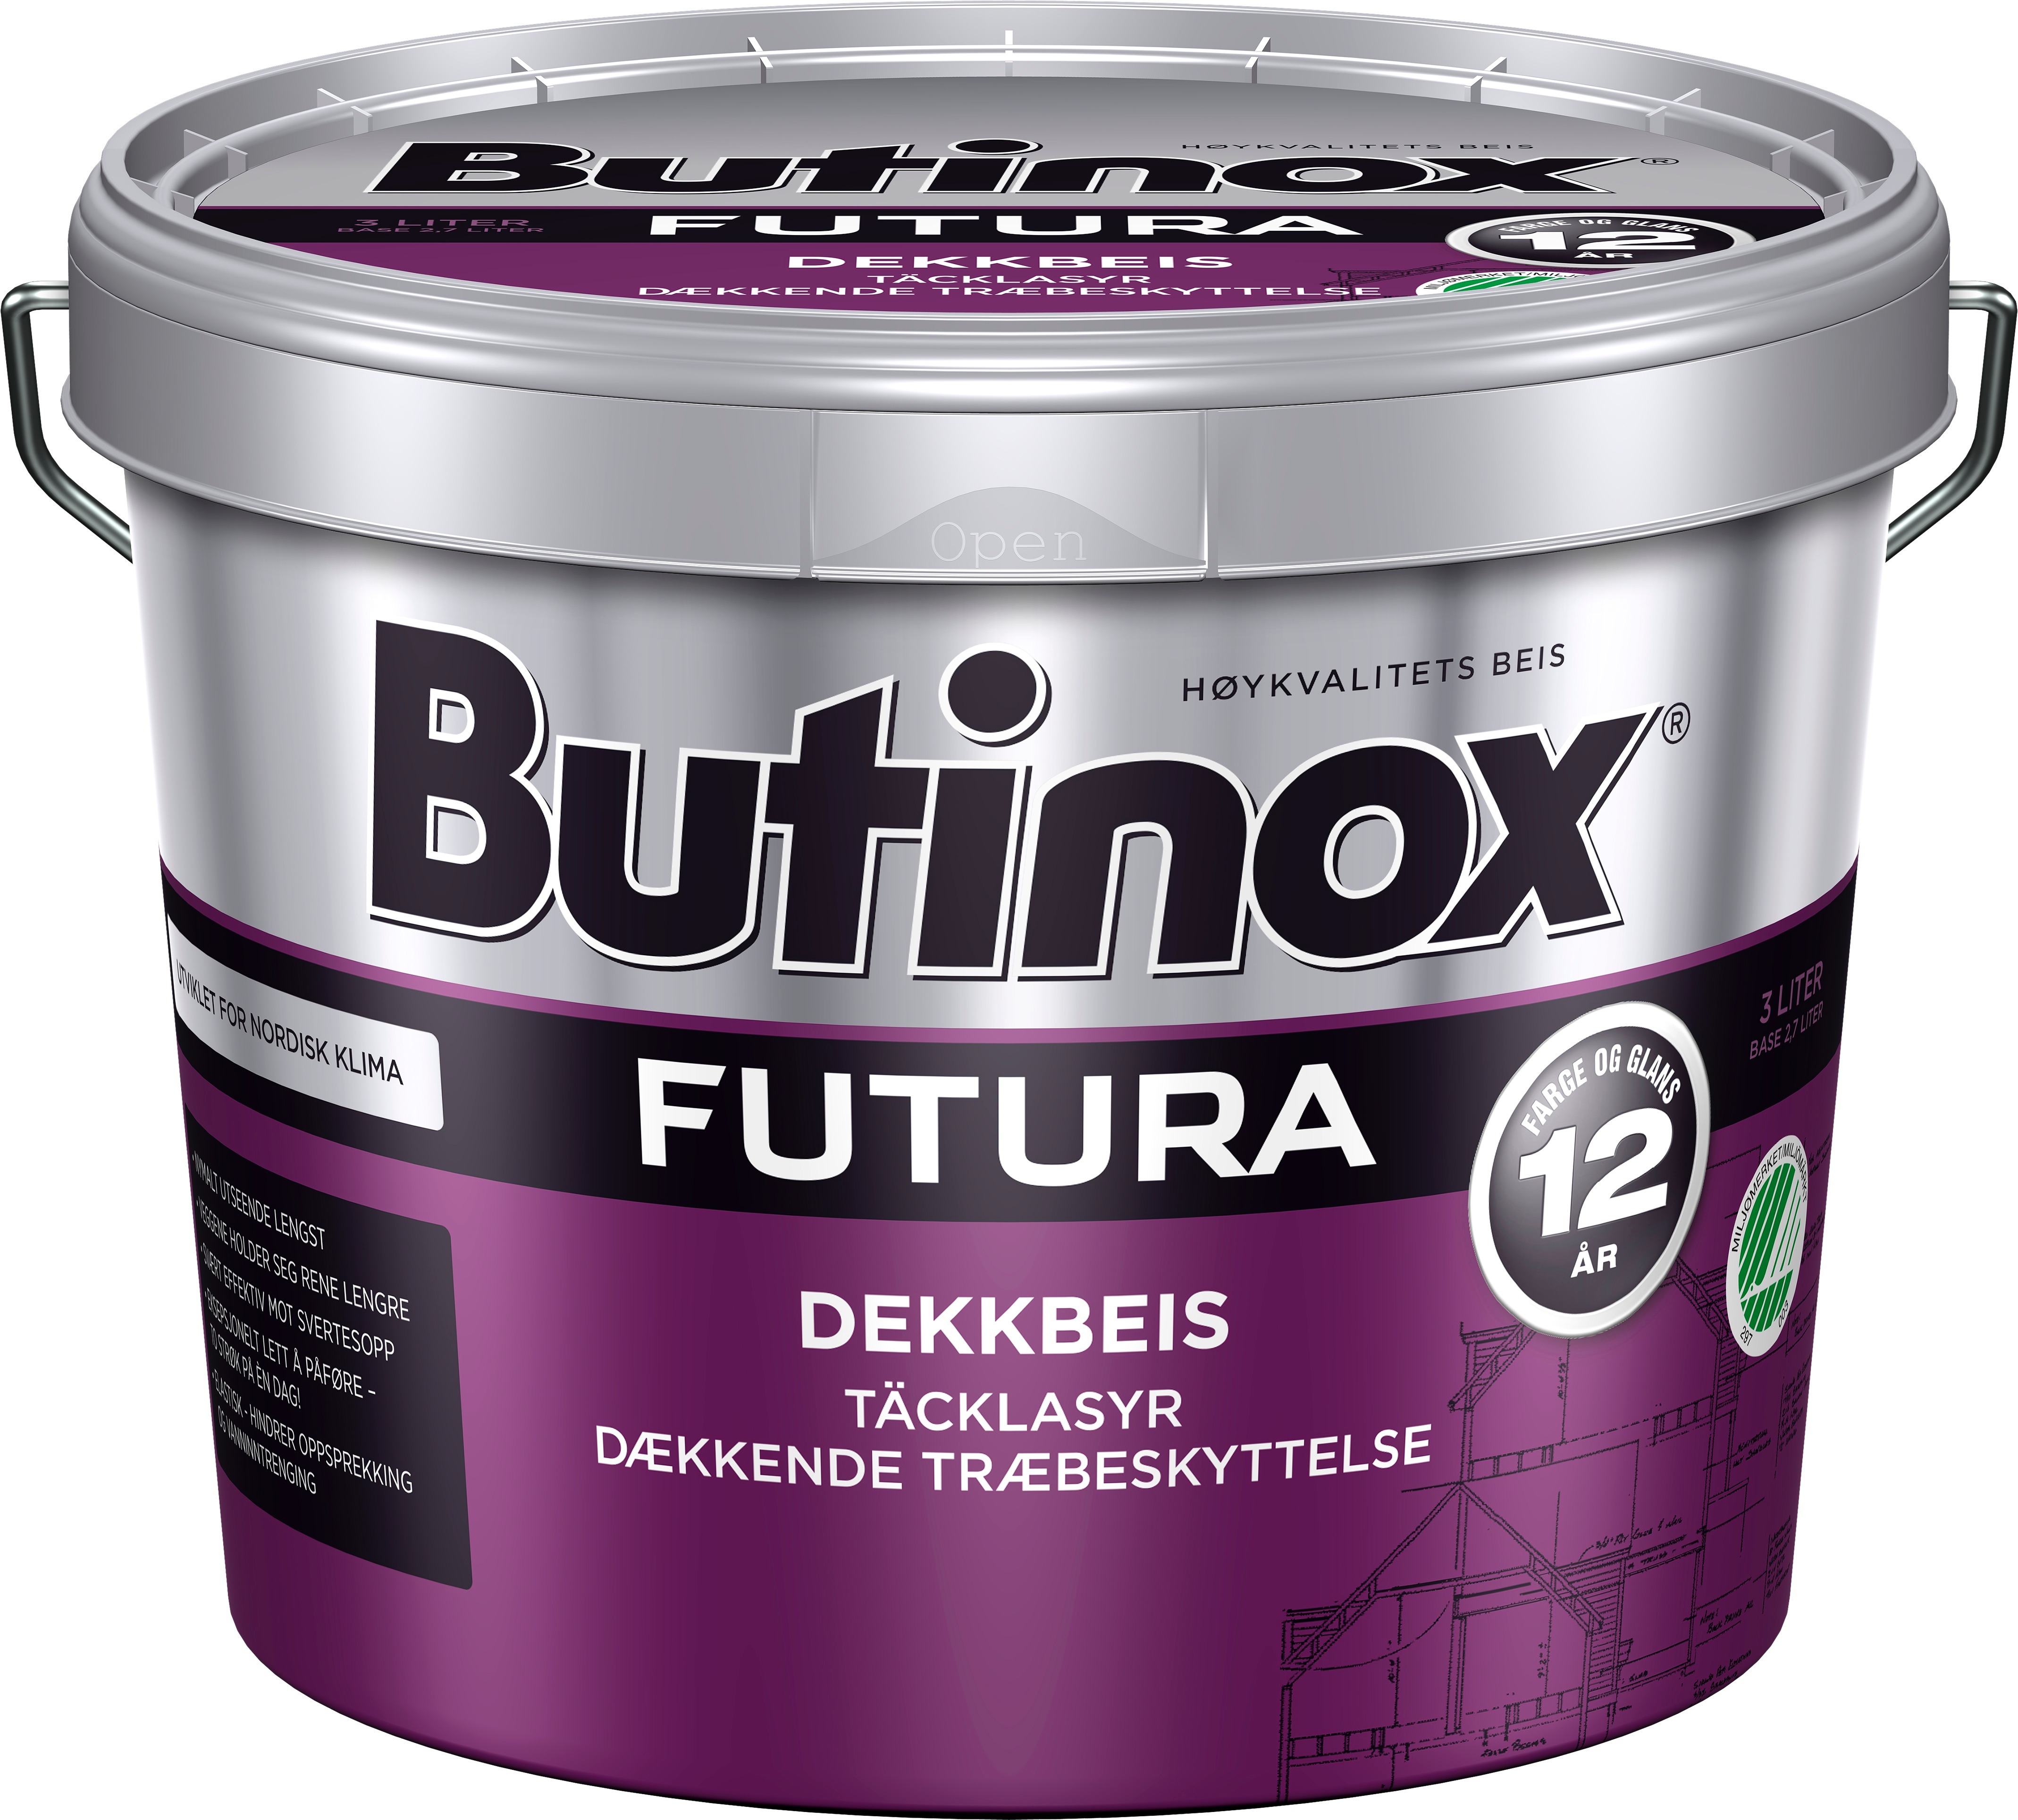 Butinox Futura dekkbeis